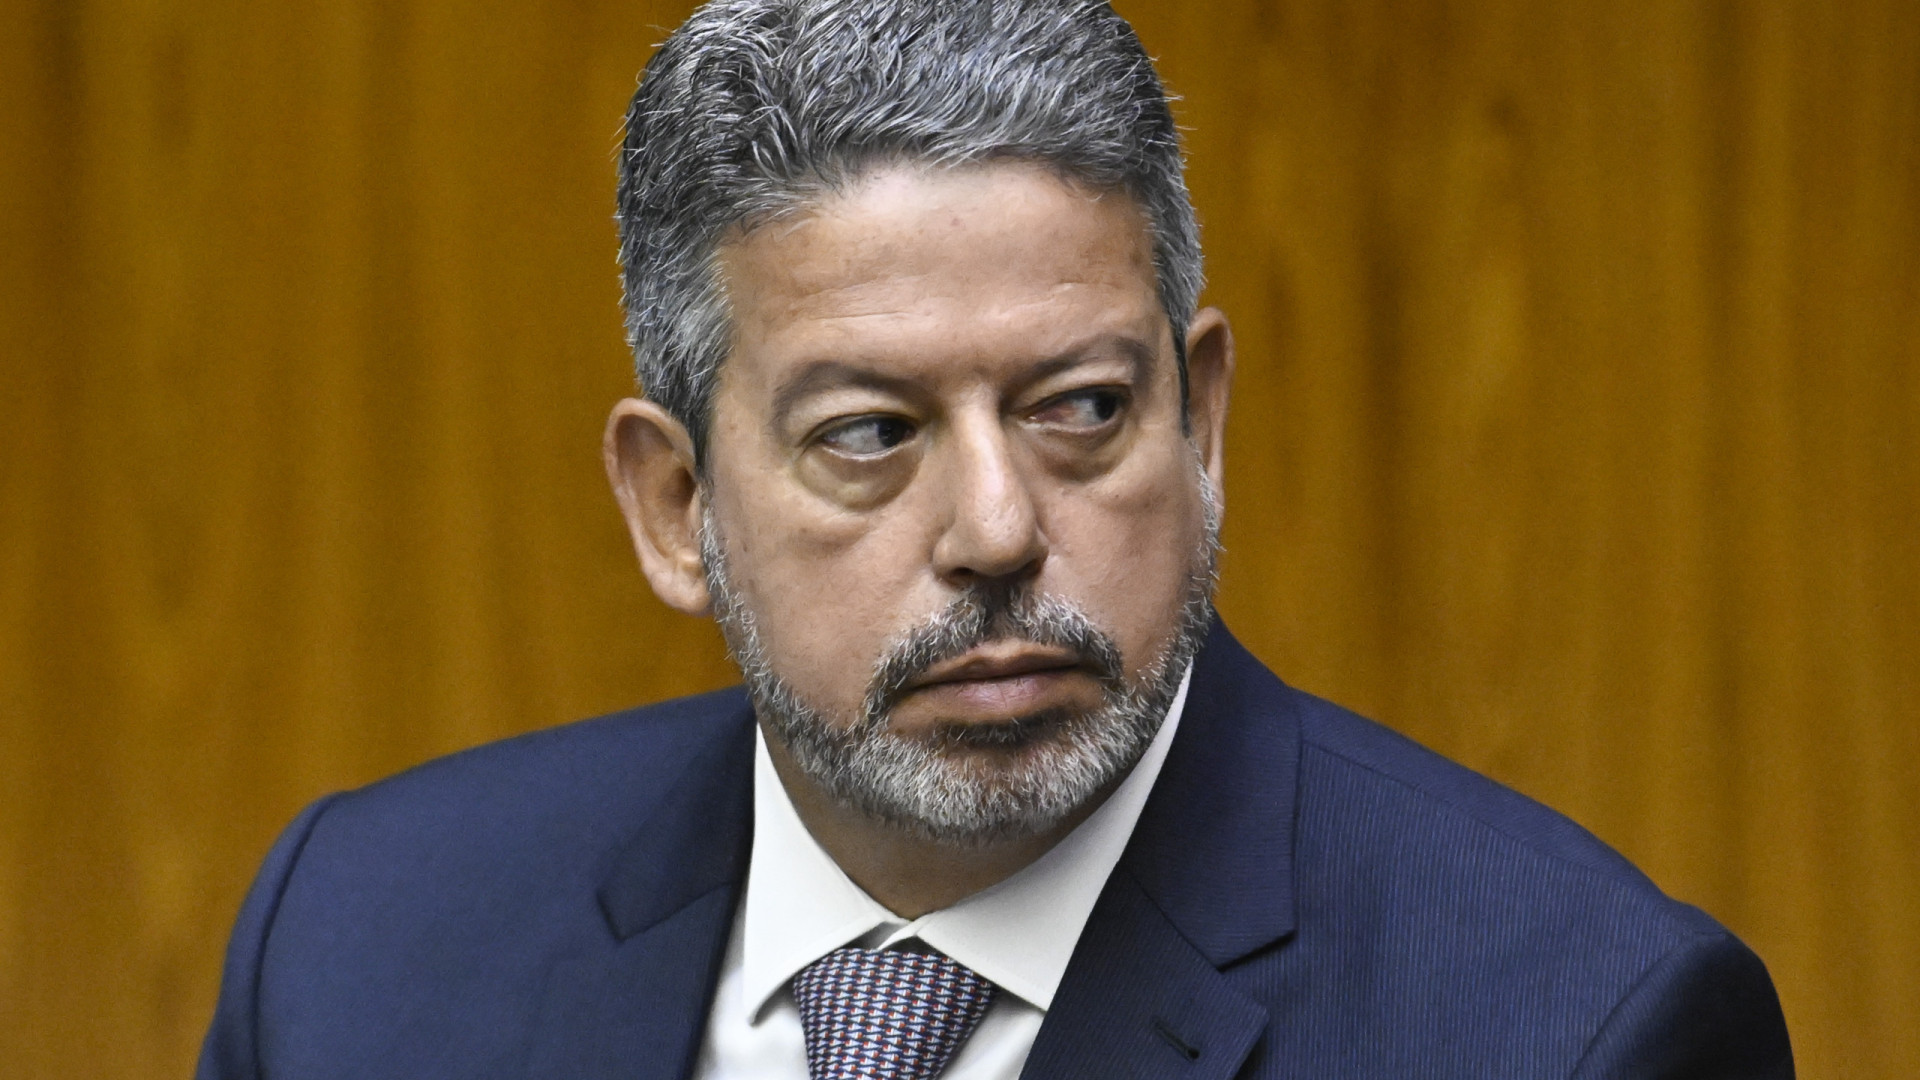 Lira cobra esclarecimentos sobre repasses da Saúde em nova pressão a governo Lula